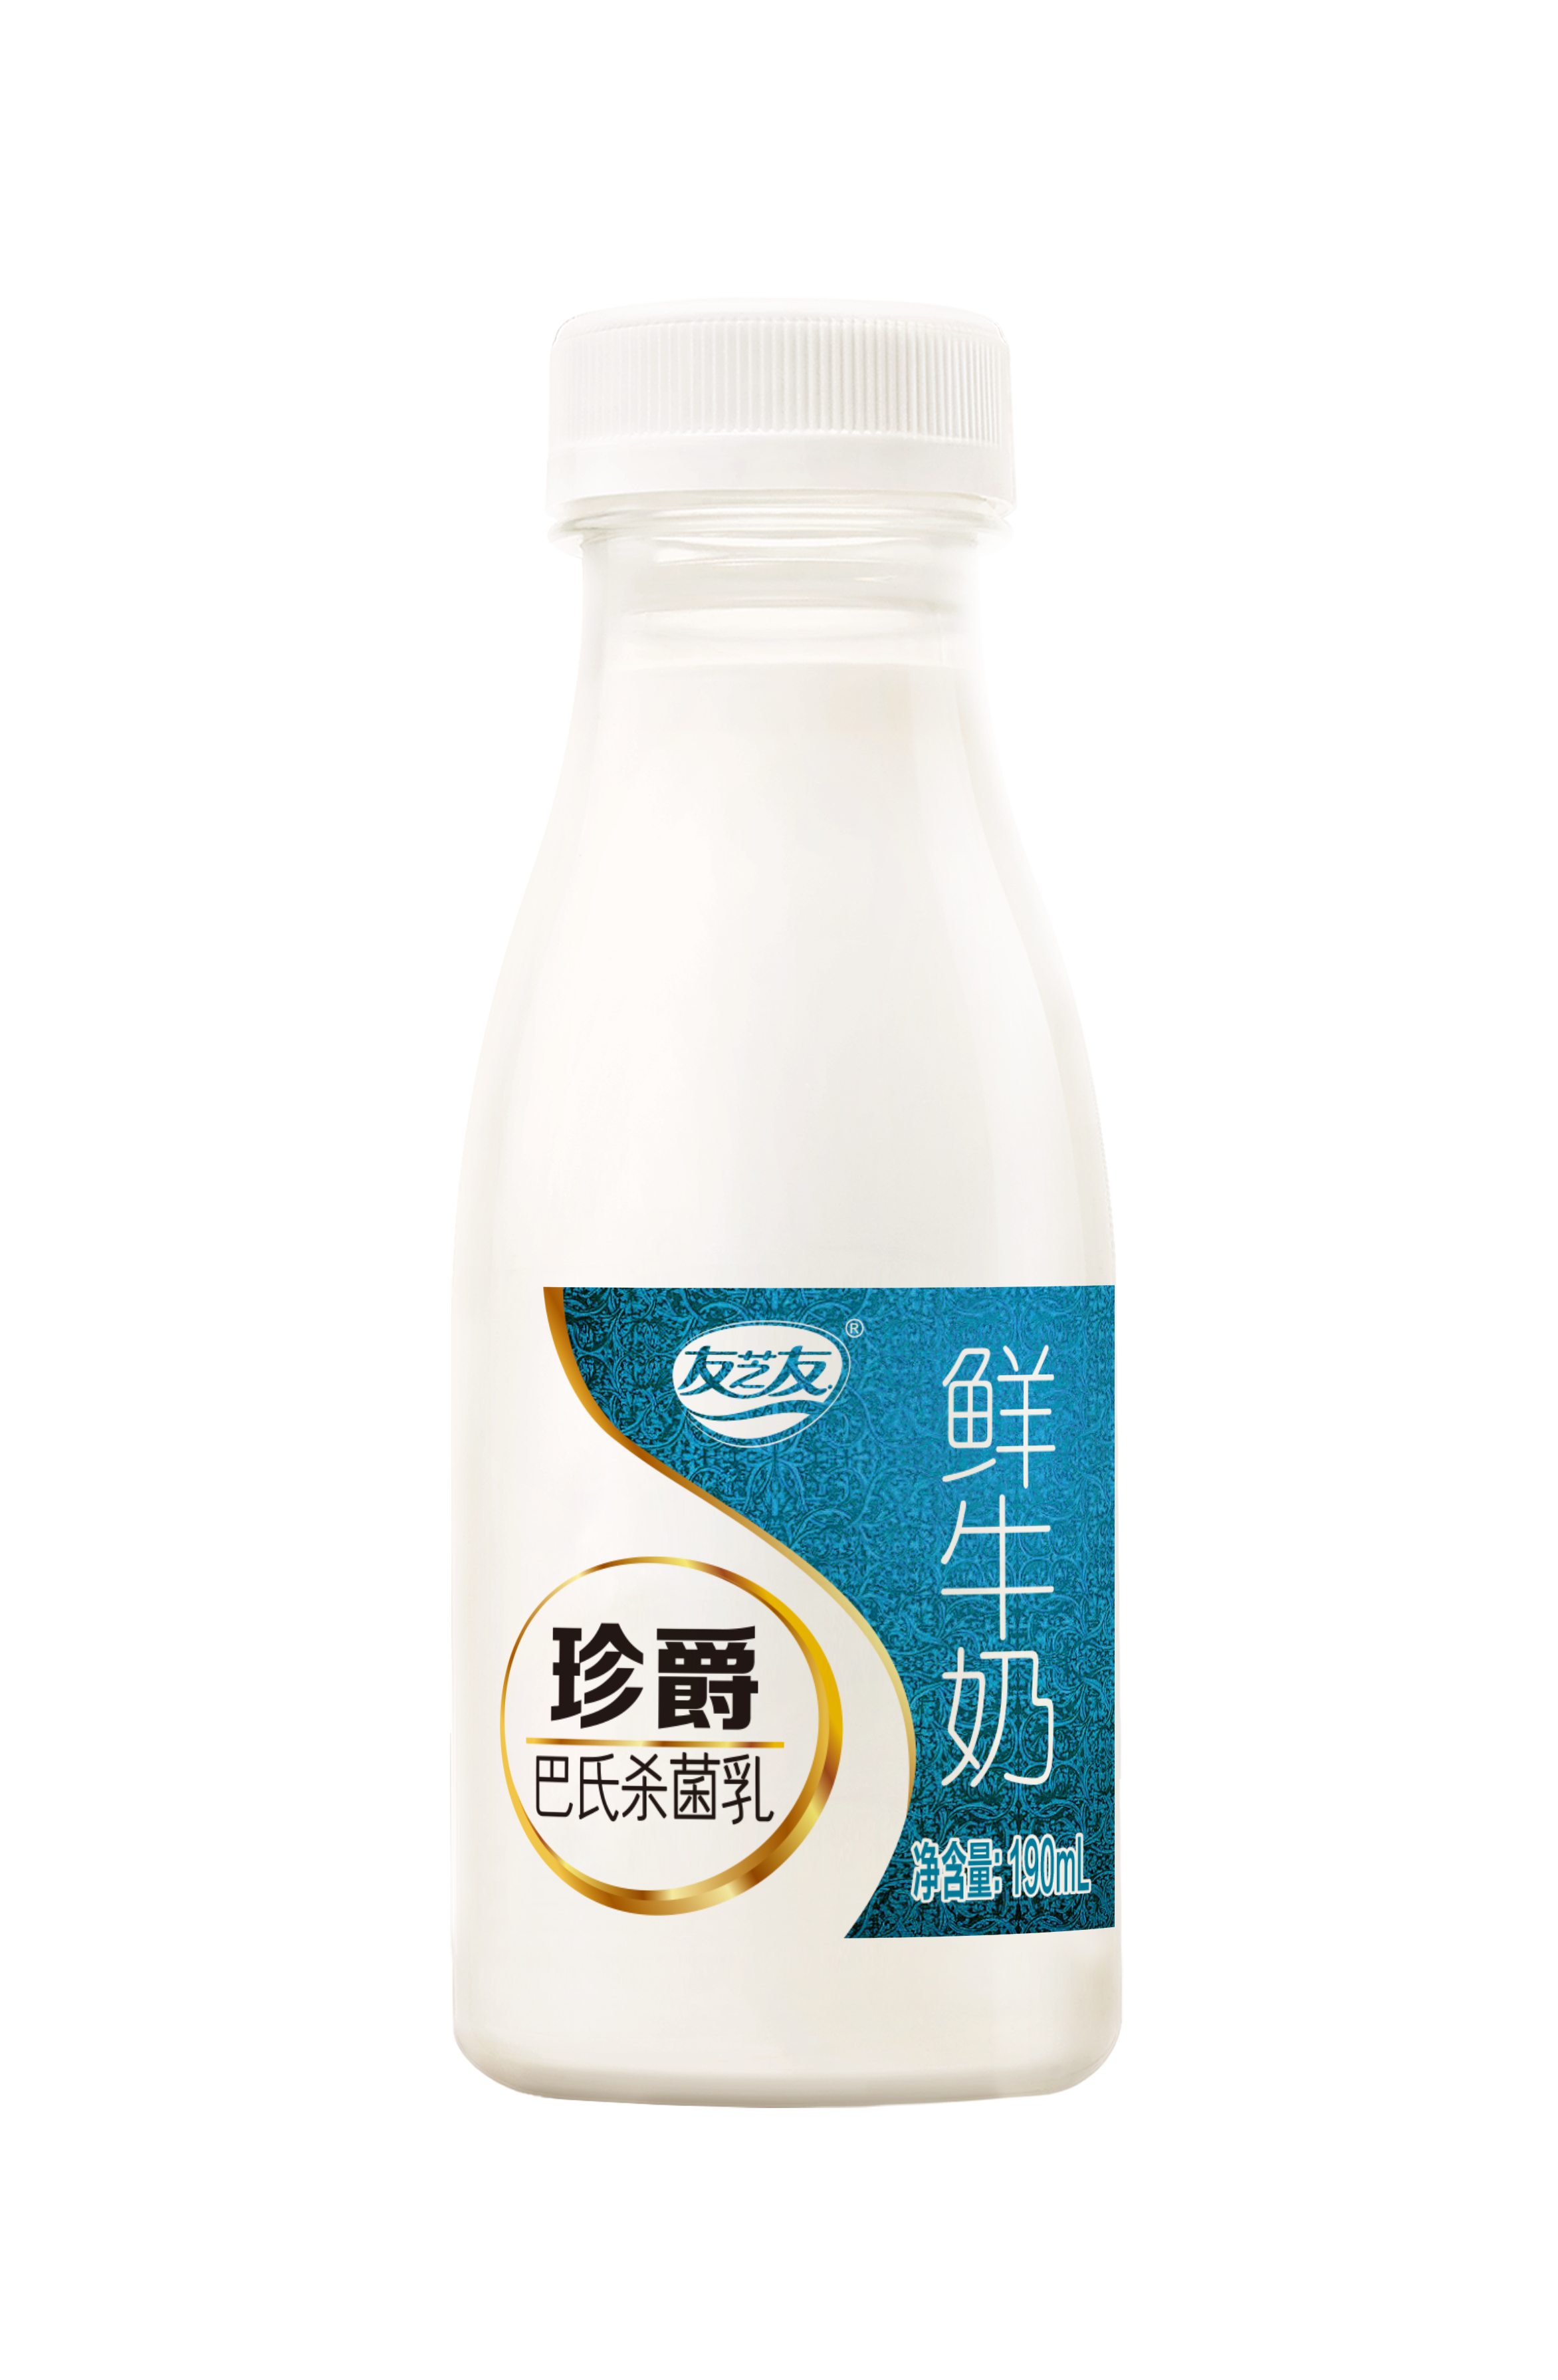 友芝友珍爵鲜牛奶 PET瓶190ml/瓶， 武汉三环内每日清晨配送上门（30天/90天/180天）